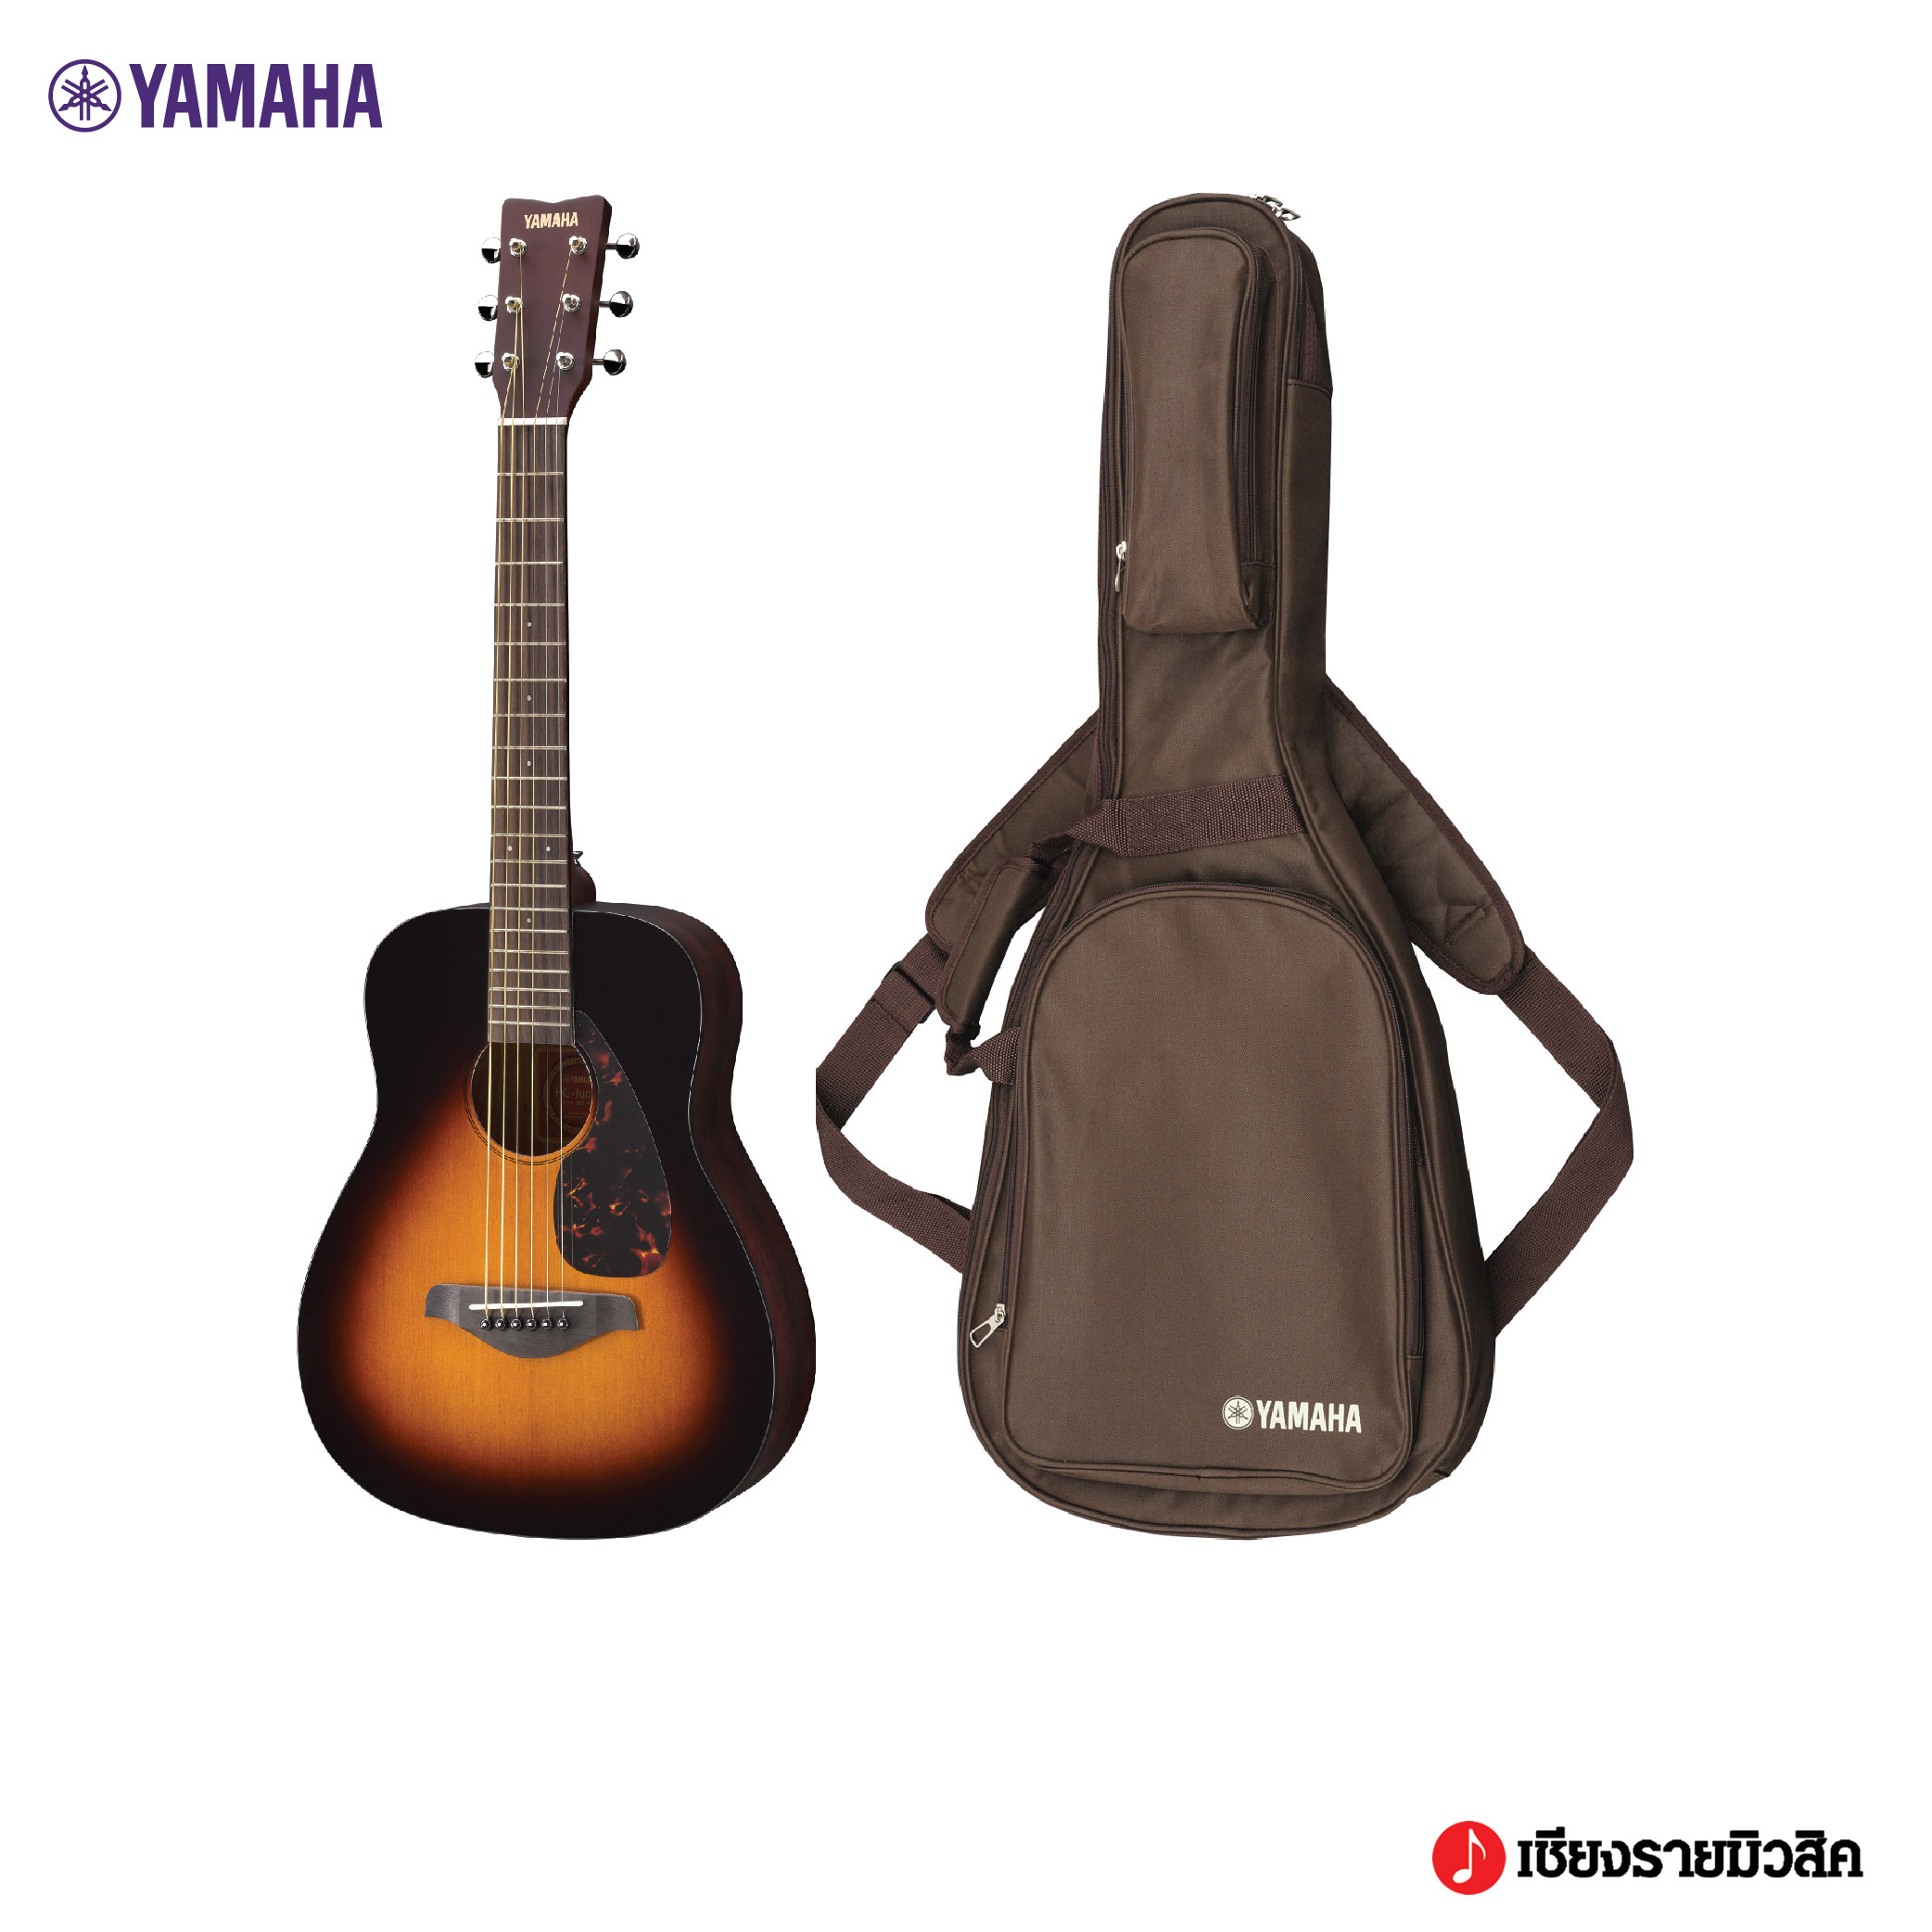 YAMAHA JR2 Acoustic Guitar กีตาร์โปร่งยามาฮ่า รุ่น JR2  ขนาด 34 นิ้ว  สี TBS